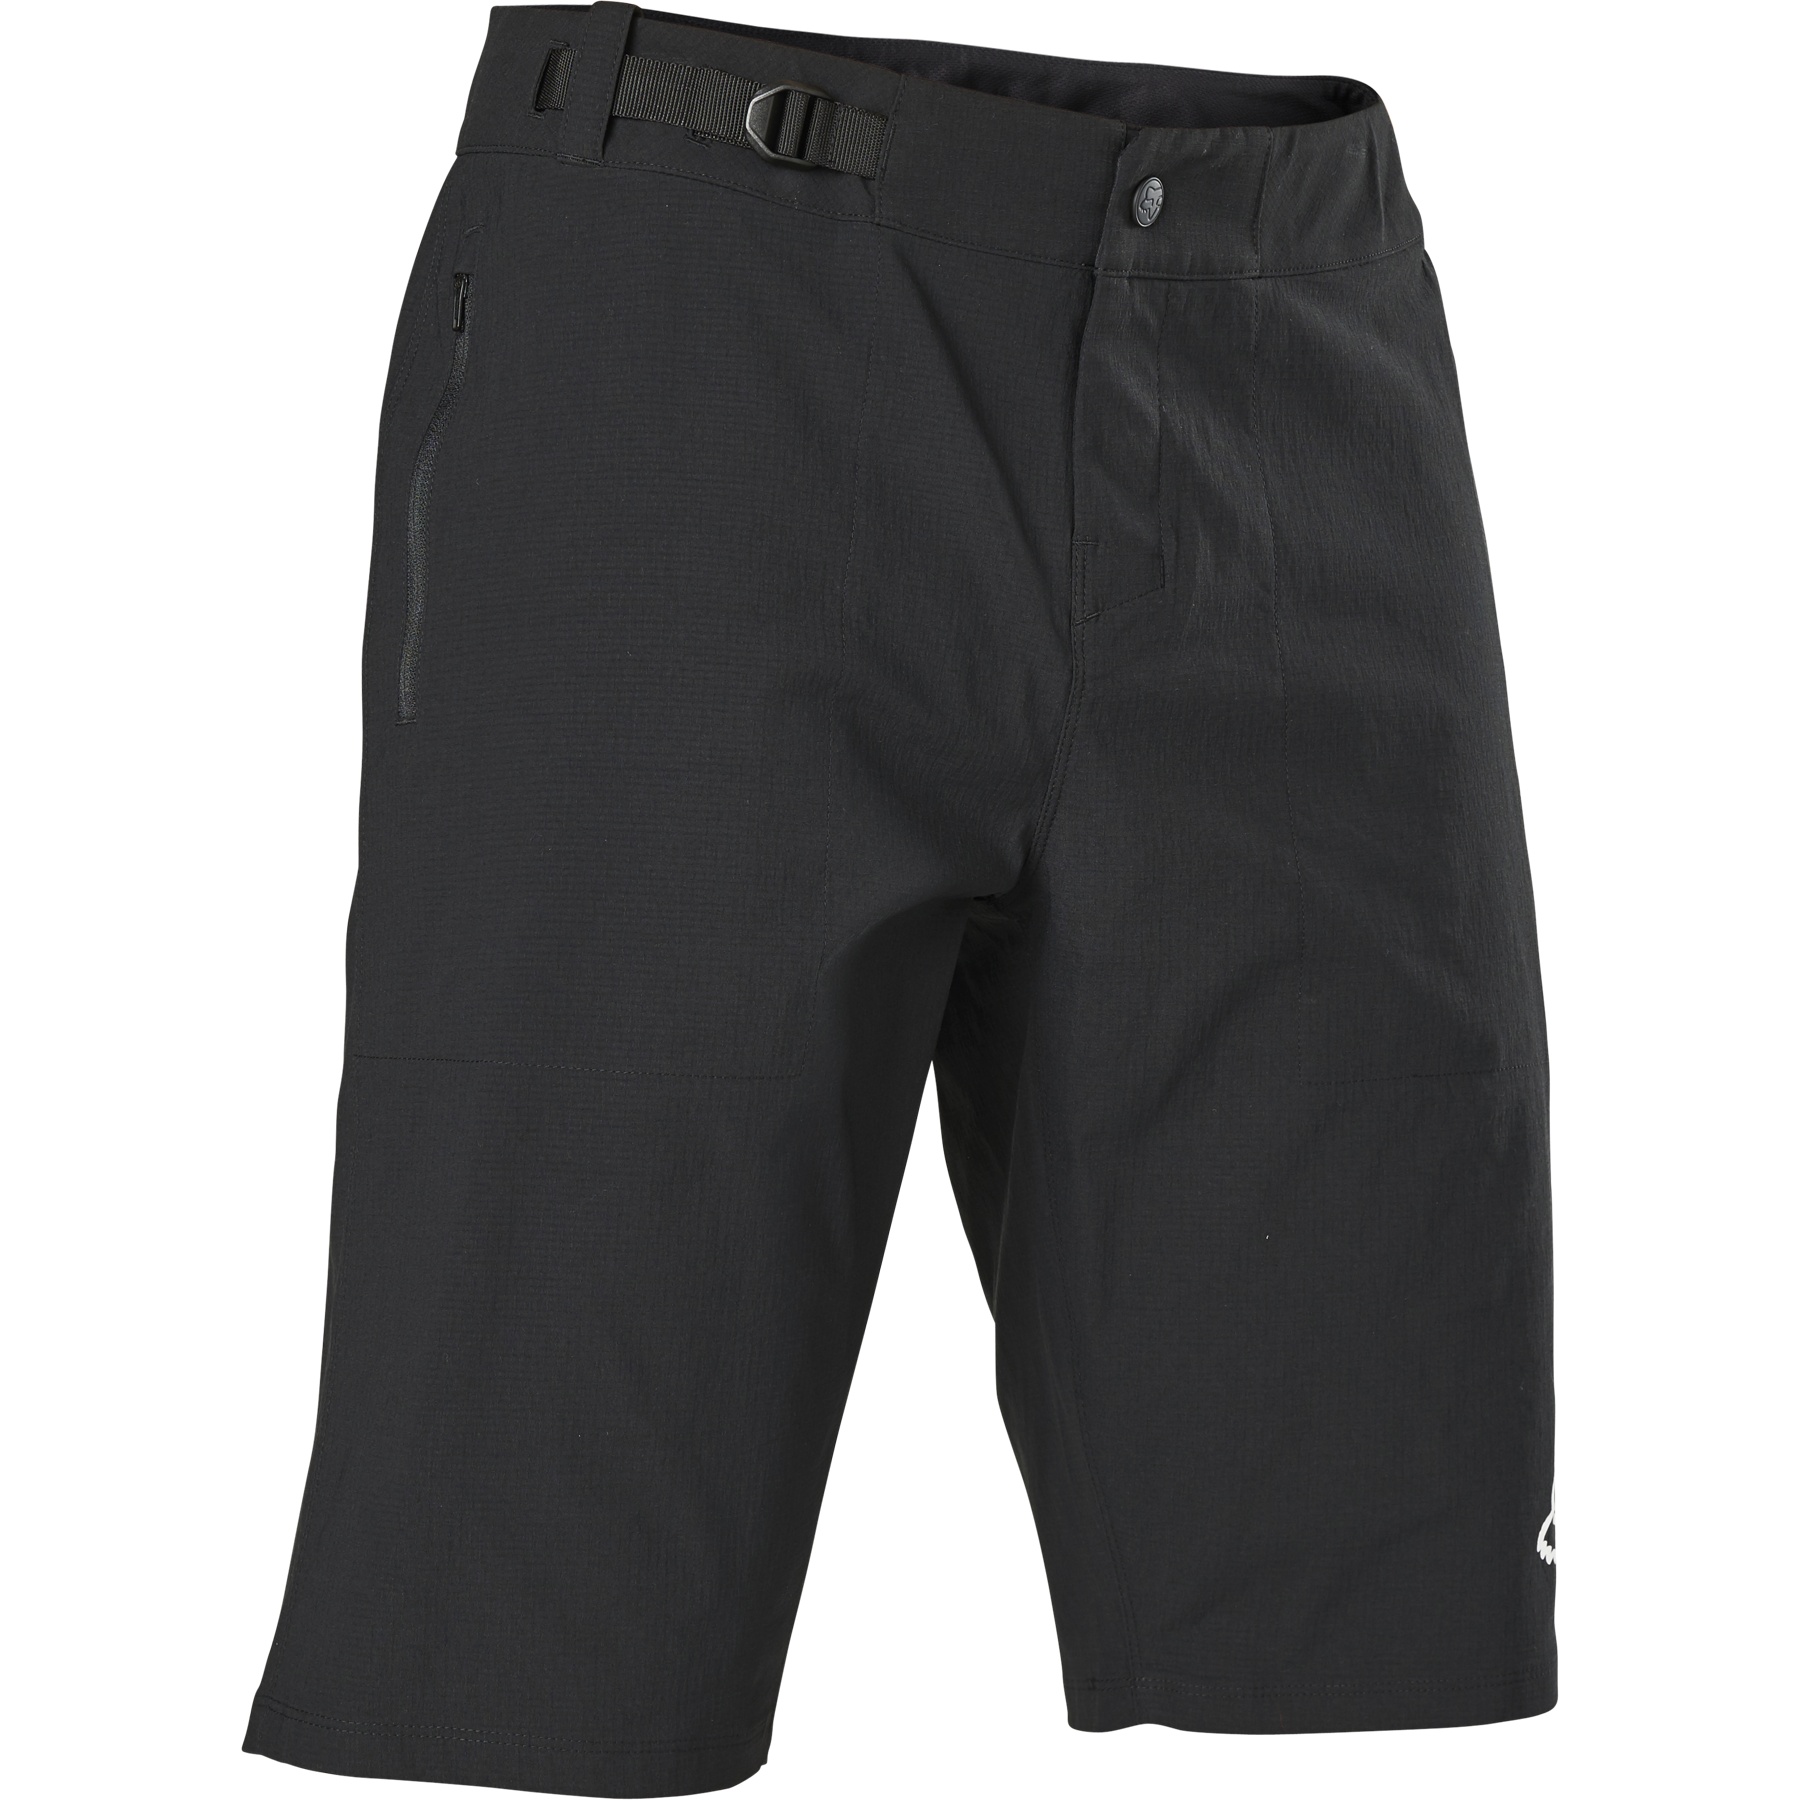 Produktbild von FOX Ranger MTB Shorts Herren - schwarz